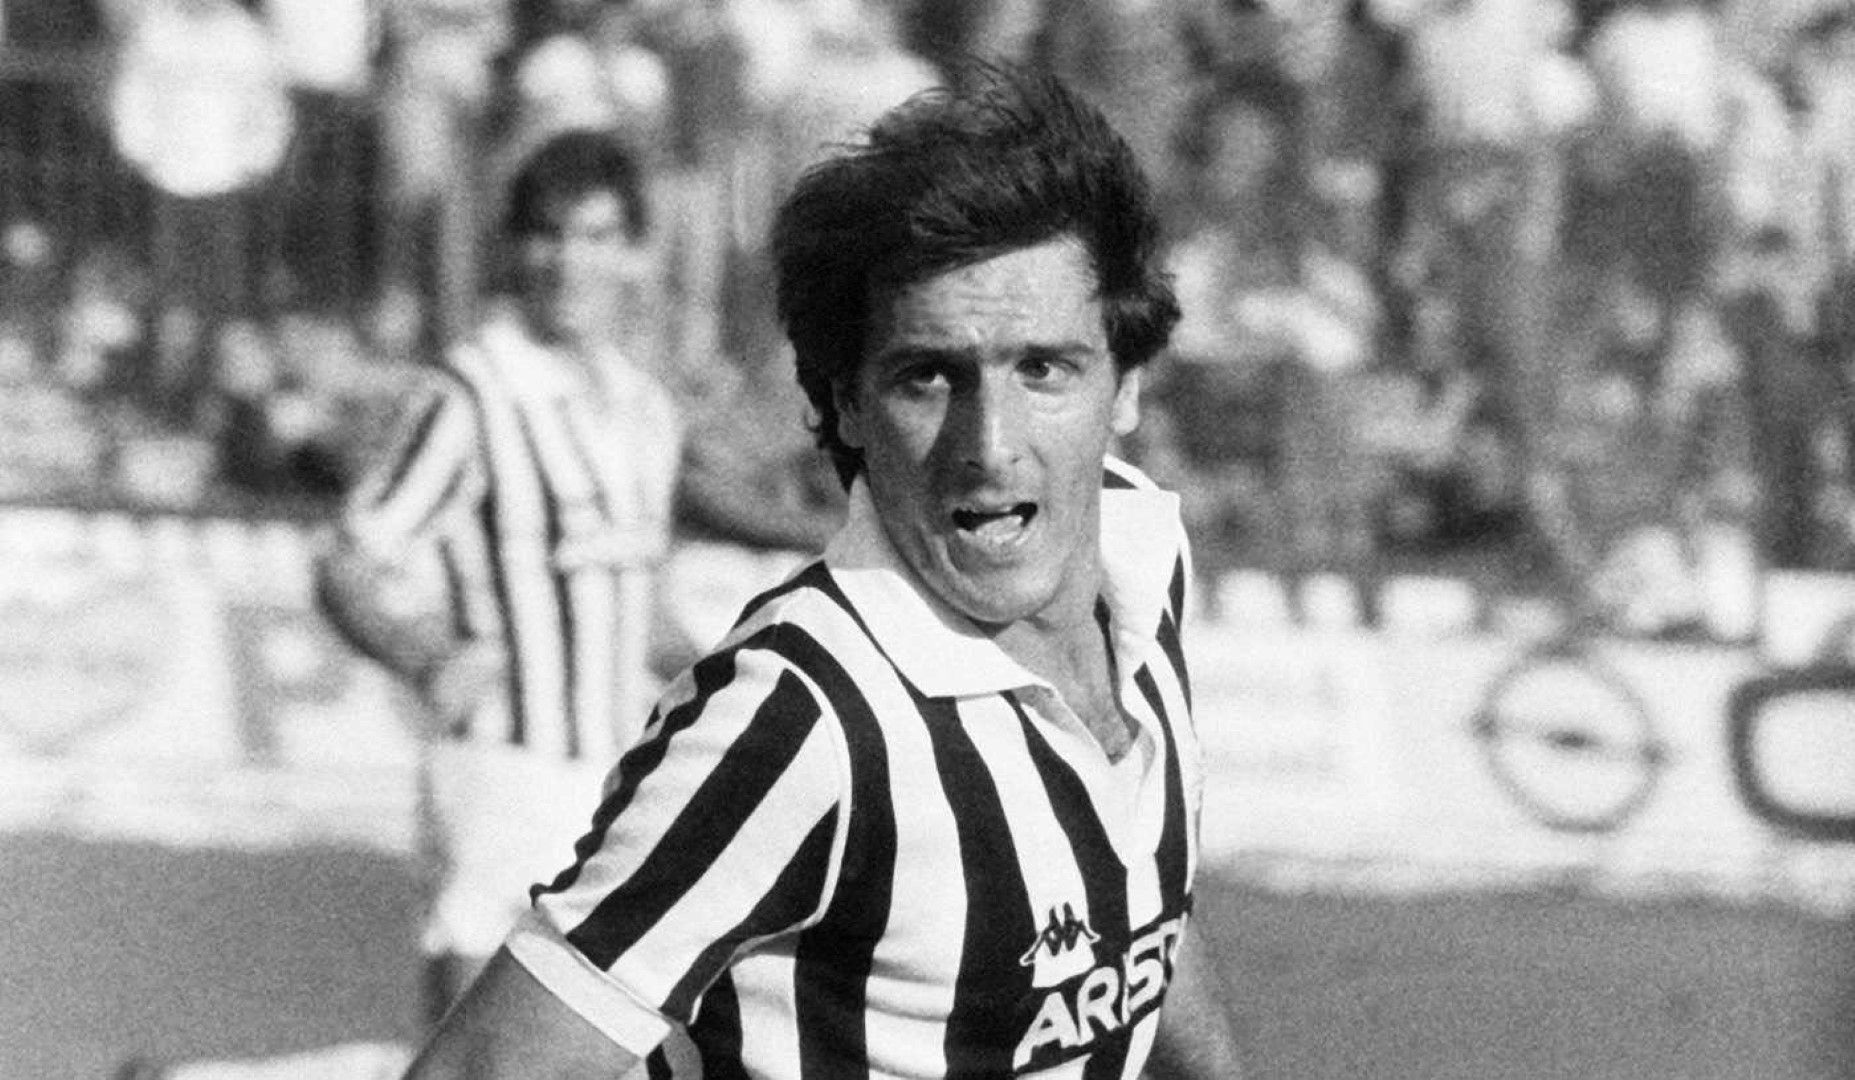 Гаетано Ширея - Човекът "Ювентус". Пример за интелигентен   играч, лидер и джентълмен на терена, който в над 550 мача   никога не получава червен картон. Пристига в "Юве" на 21   години през 1974-а, изкарва 14 сезона в клуба и печели 7   титли, трите европейски турнира, както и световната титла с   Италия през 1982 г. Избран за най-велик играч в историята на   "Ювентус" от тифозите.